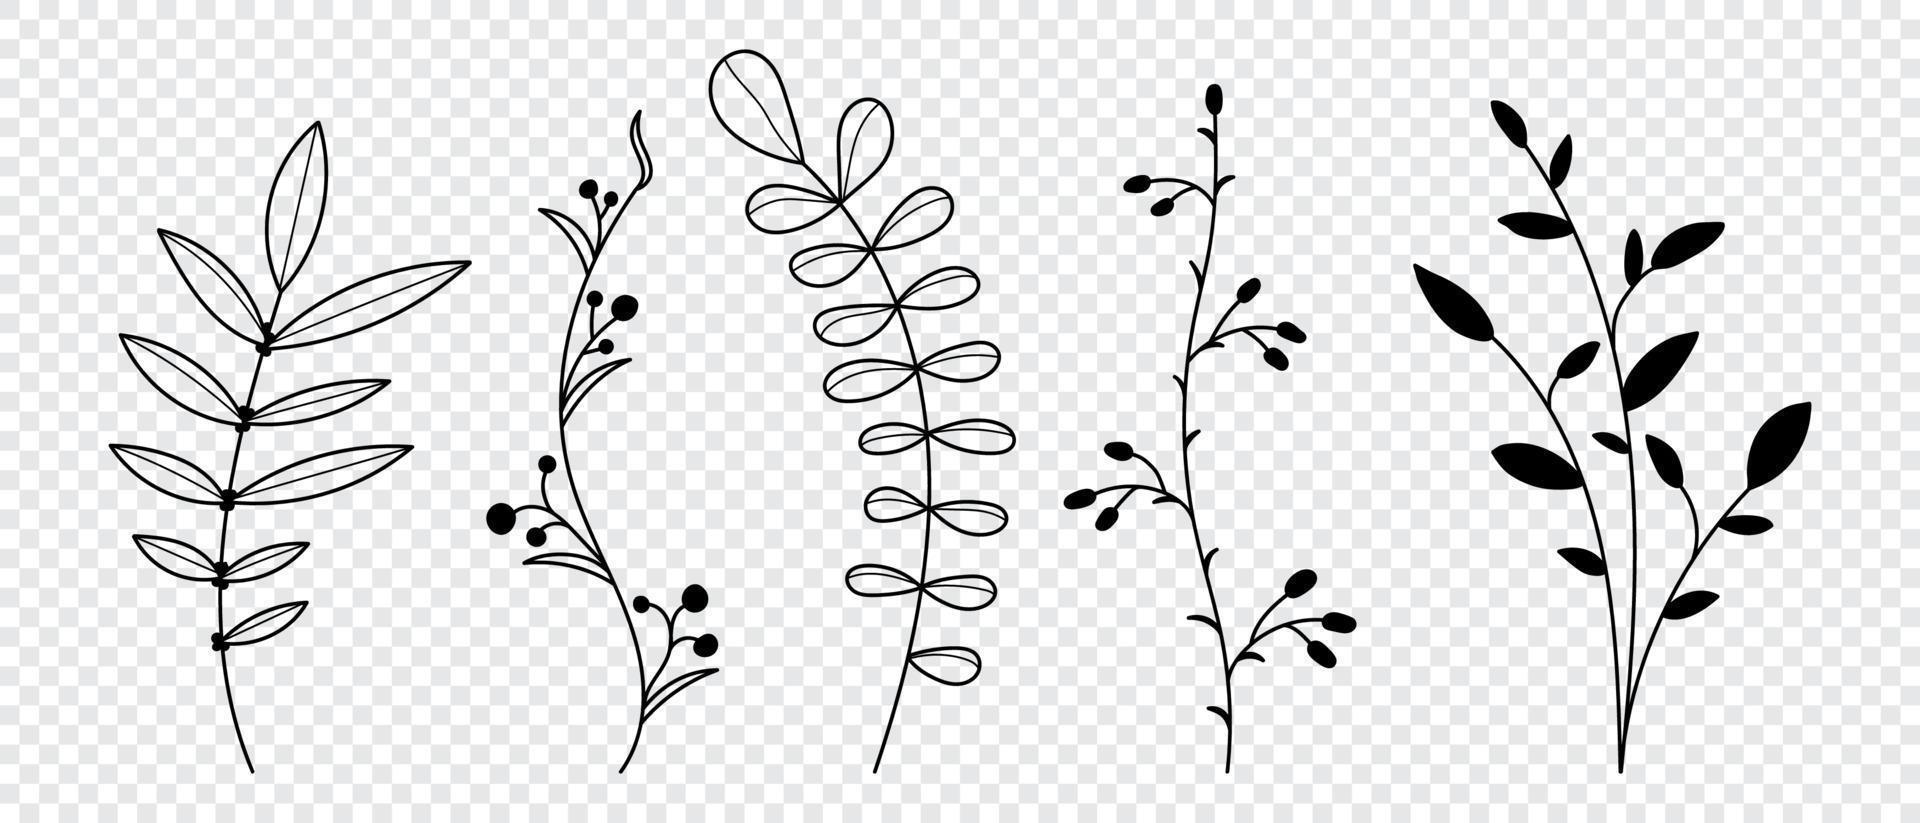 conjunto de plantas y hierbas vectoriales. elementos florales dibujados a mano. siluetas de elementos naturales para fondos estacionales. ilustración vectorial vector